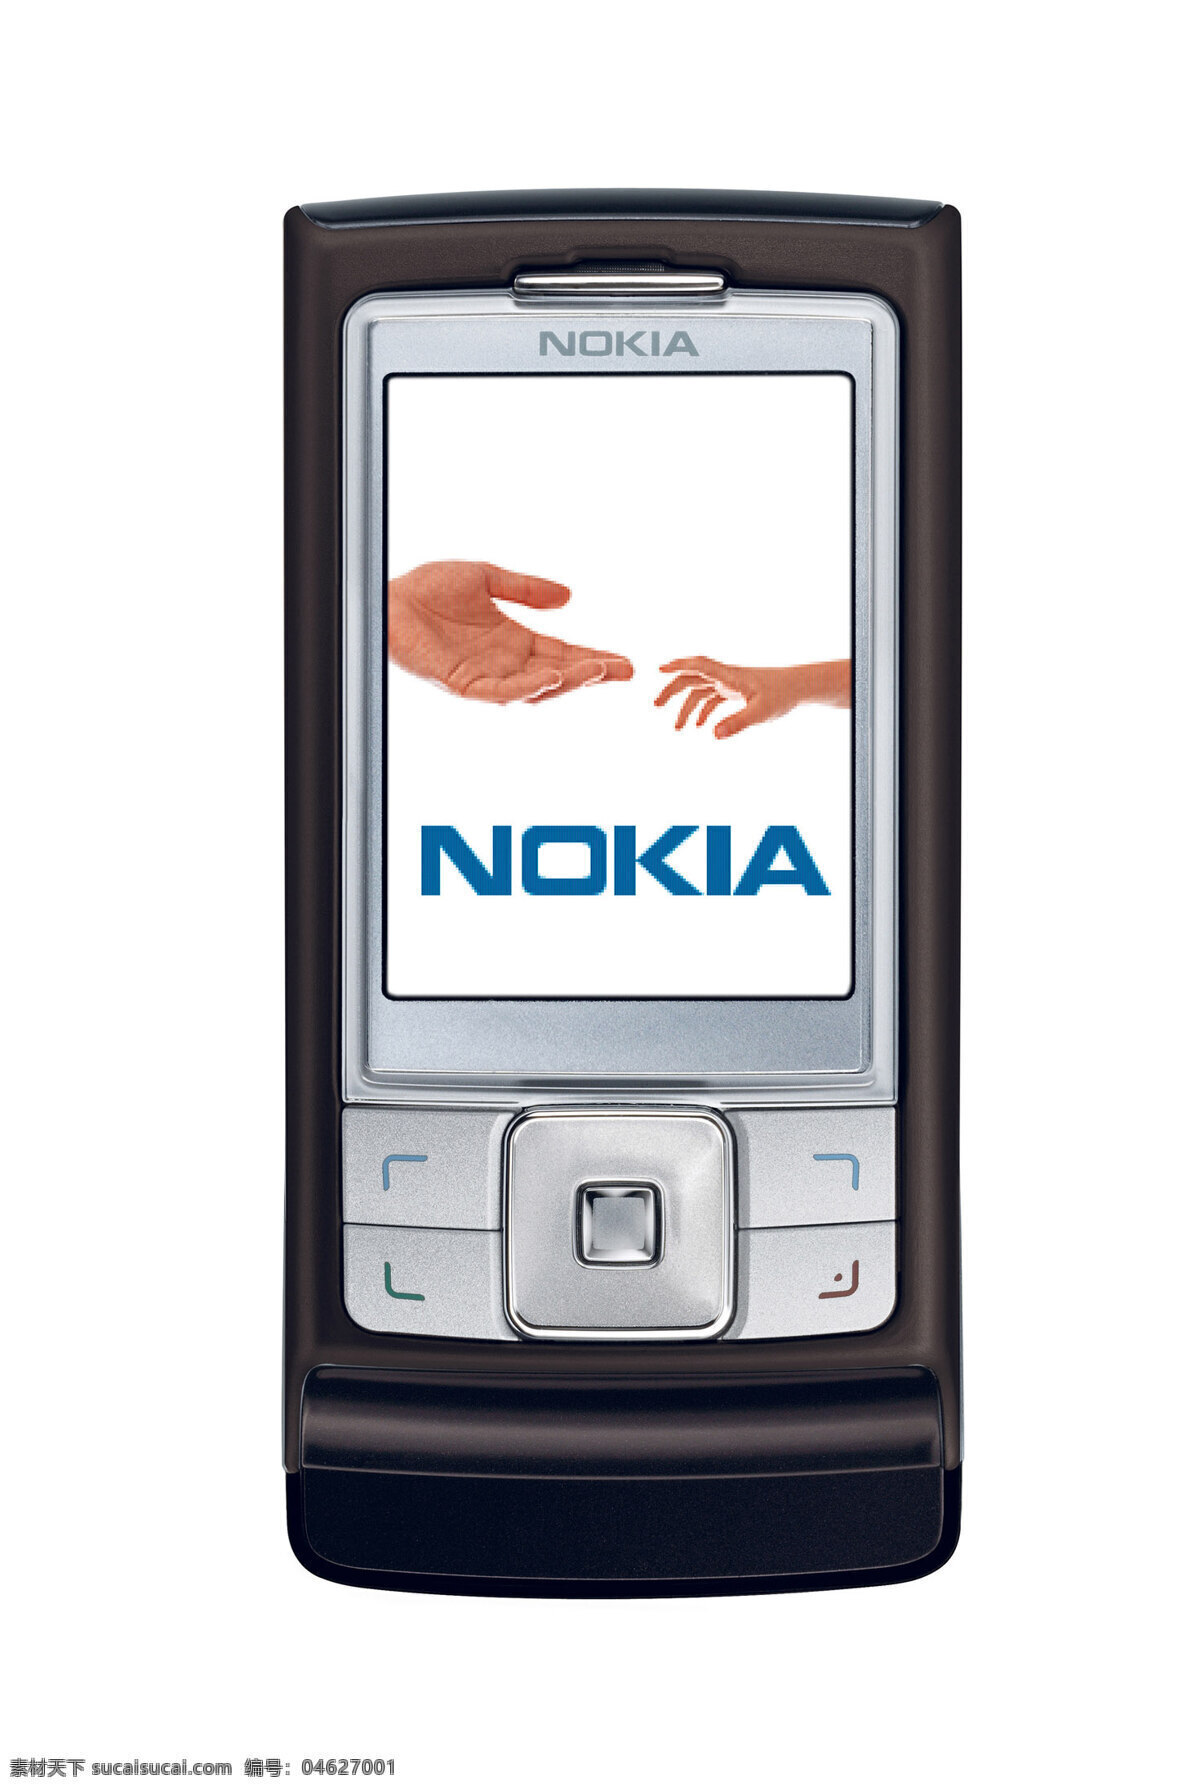 诺基亚手机 nokia 手机 诺基亚 品牌手机 直板手机 智能手机 彩屏手机 生活百科 电脑网络 摄影图库